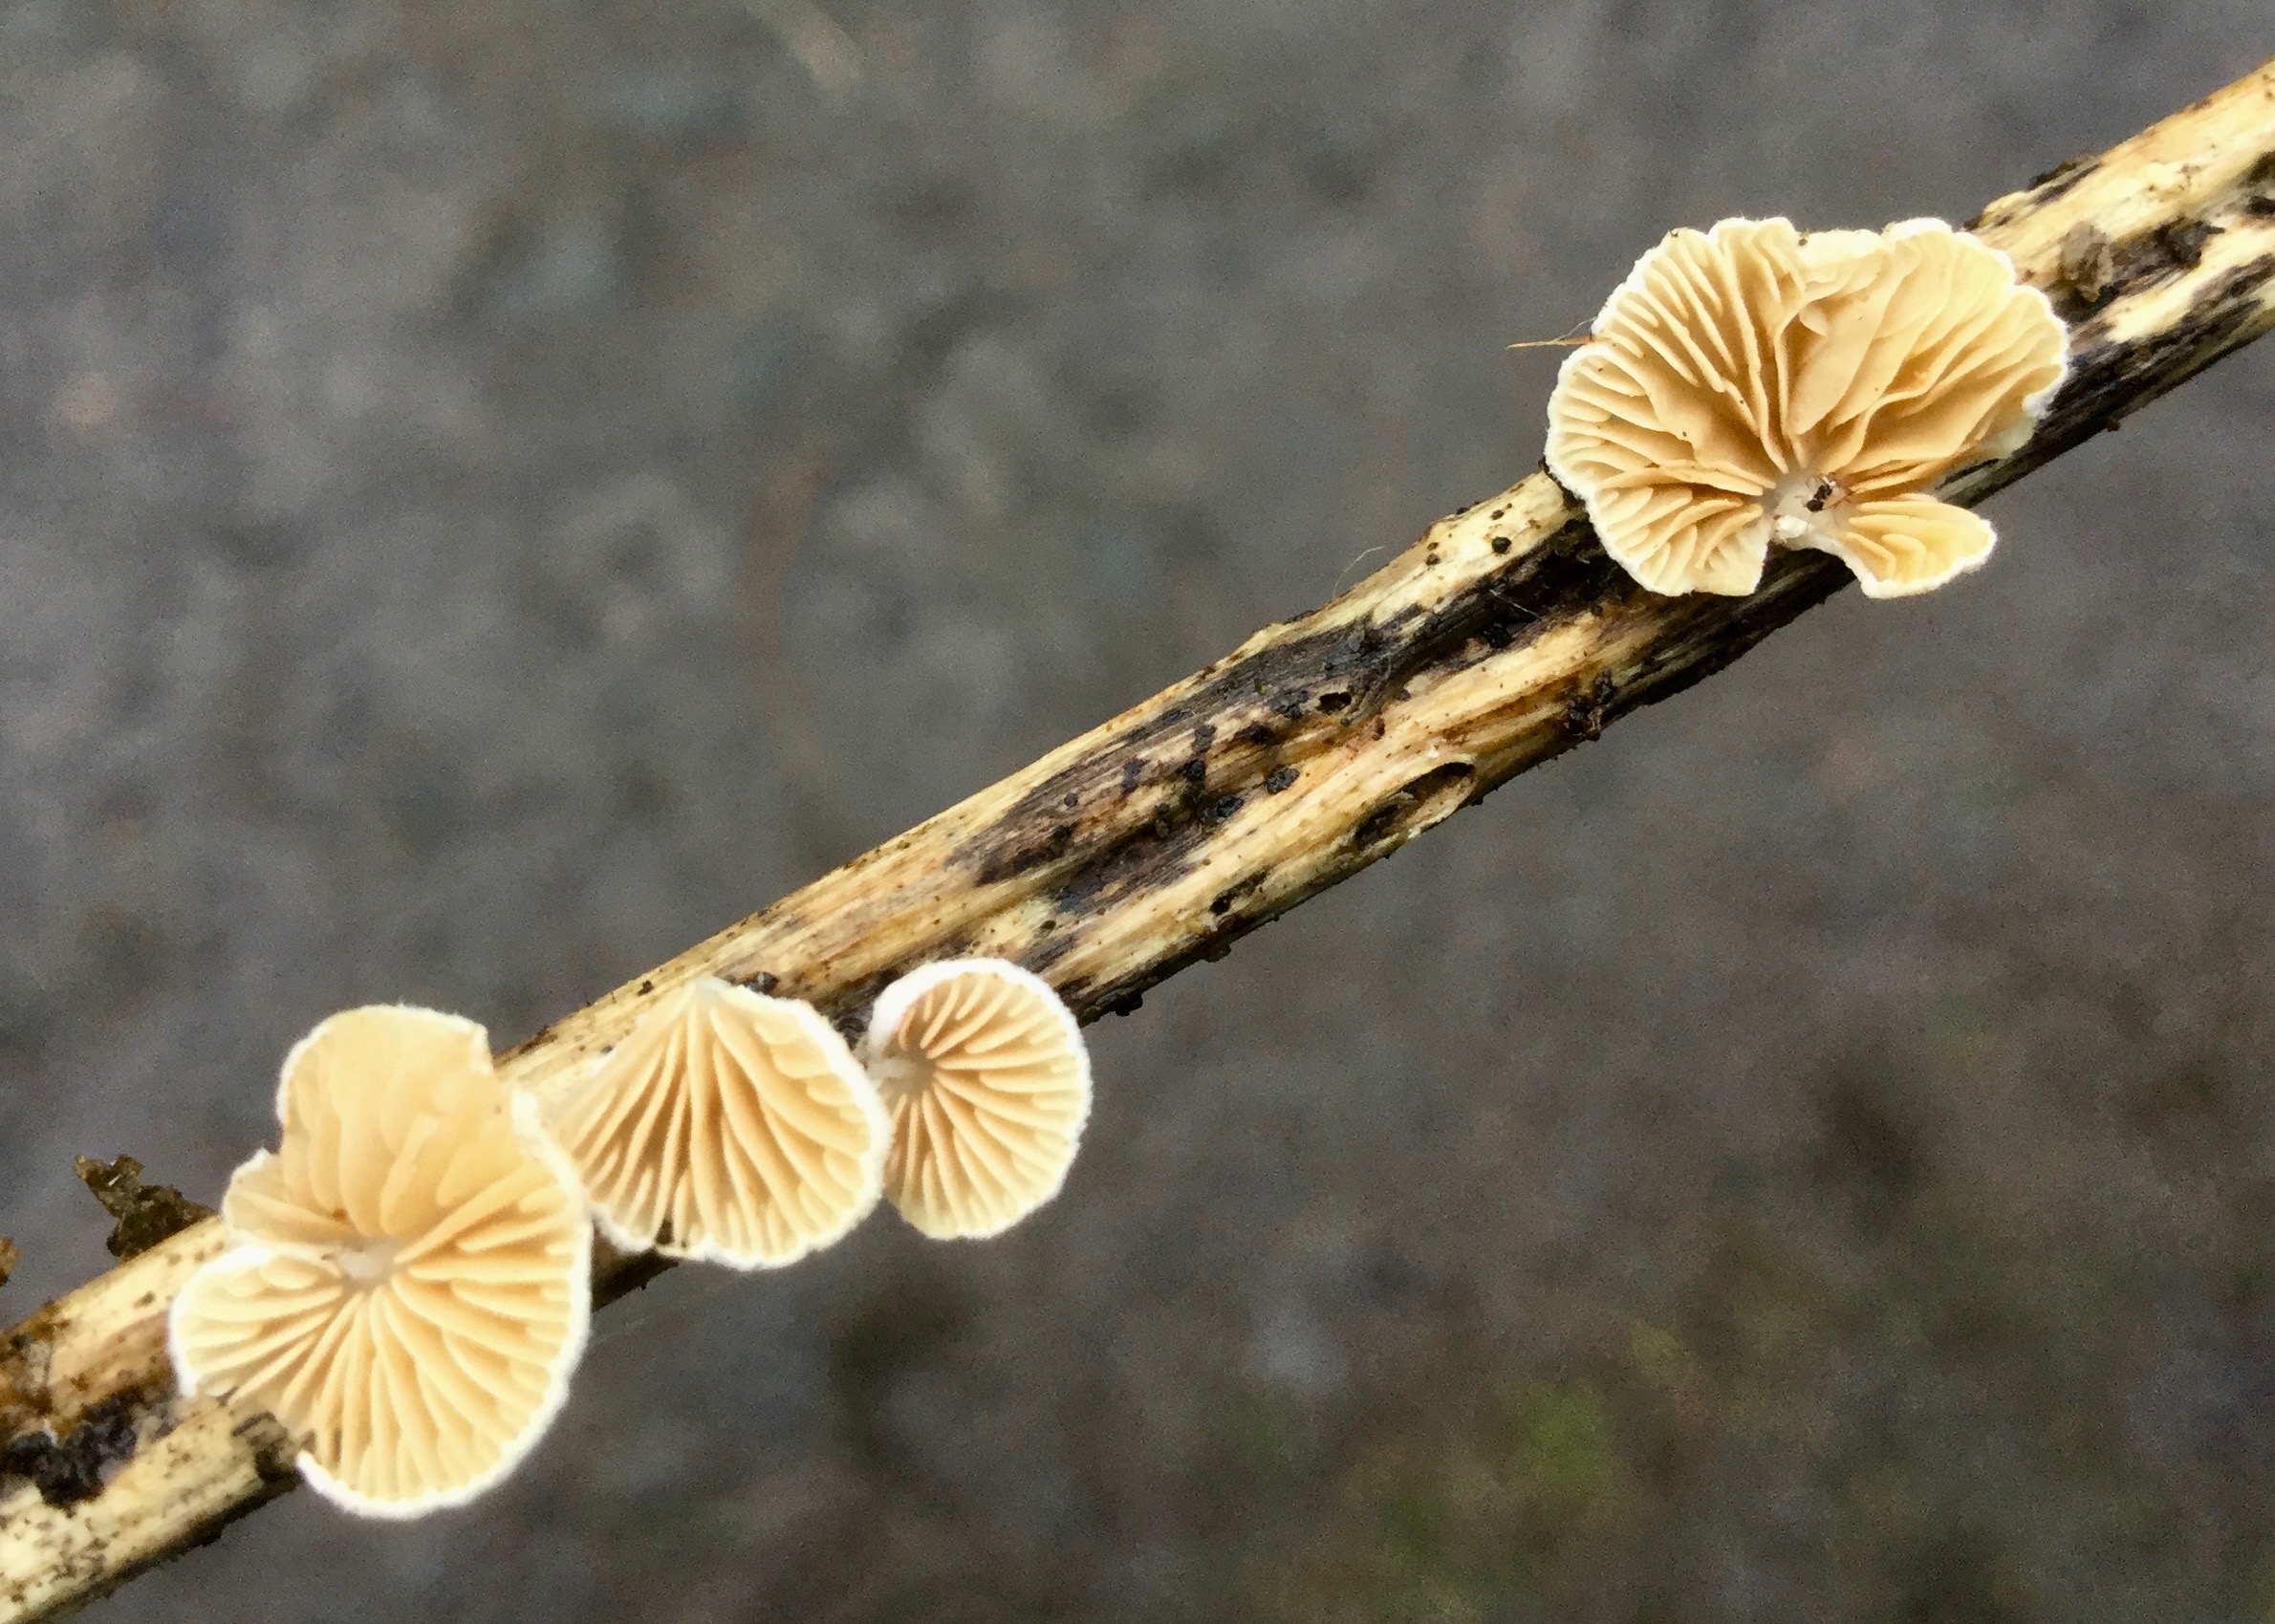 Mortonhall Fungi - 2 Feb 2020 - Photo 52